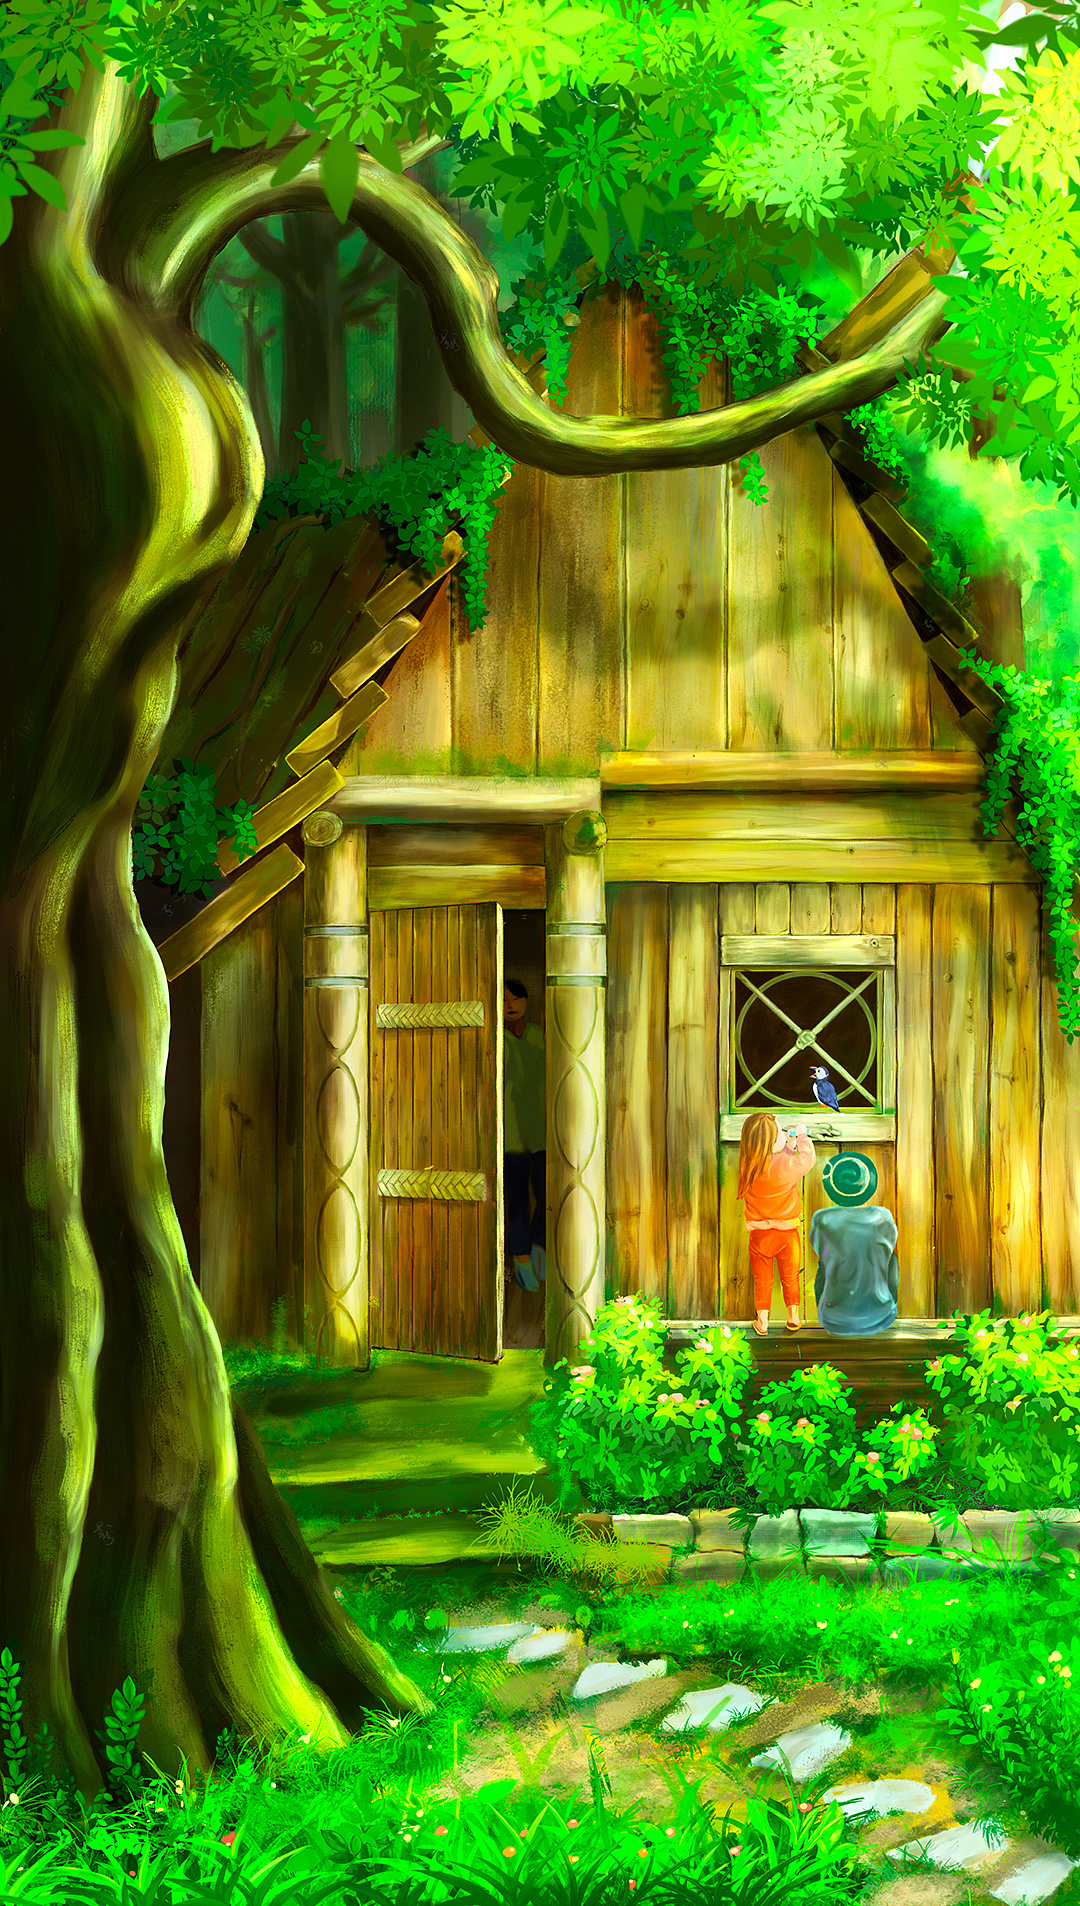 原创插画《森林小木屋》